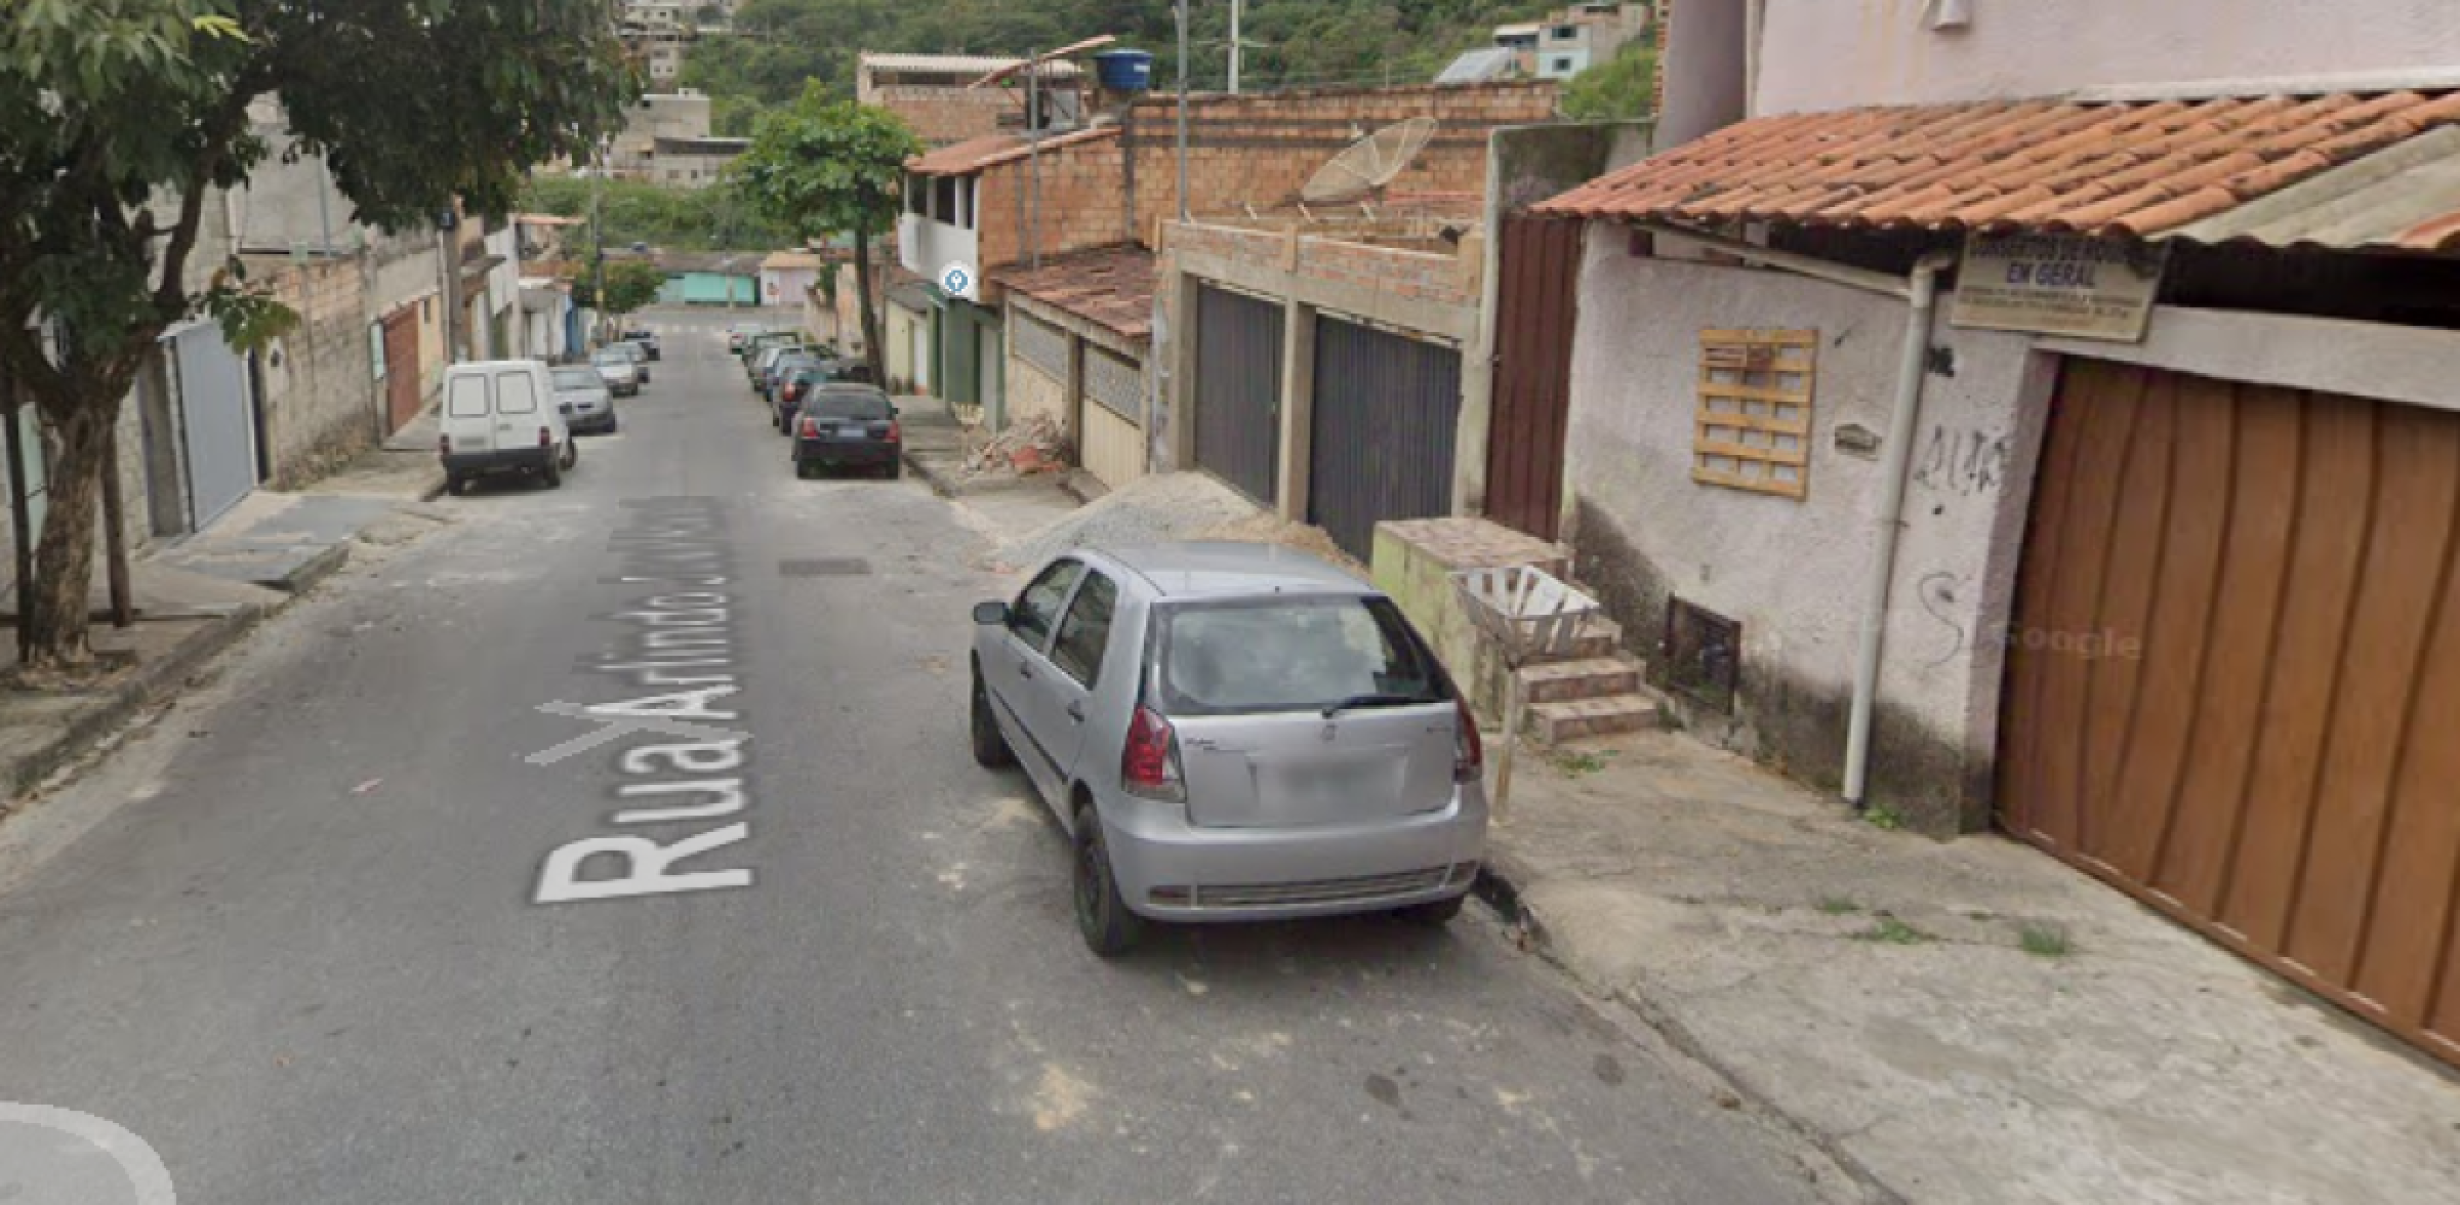 Homem cheira cocaína, mata a mulher e é preso em Belo Horizonte